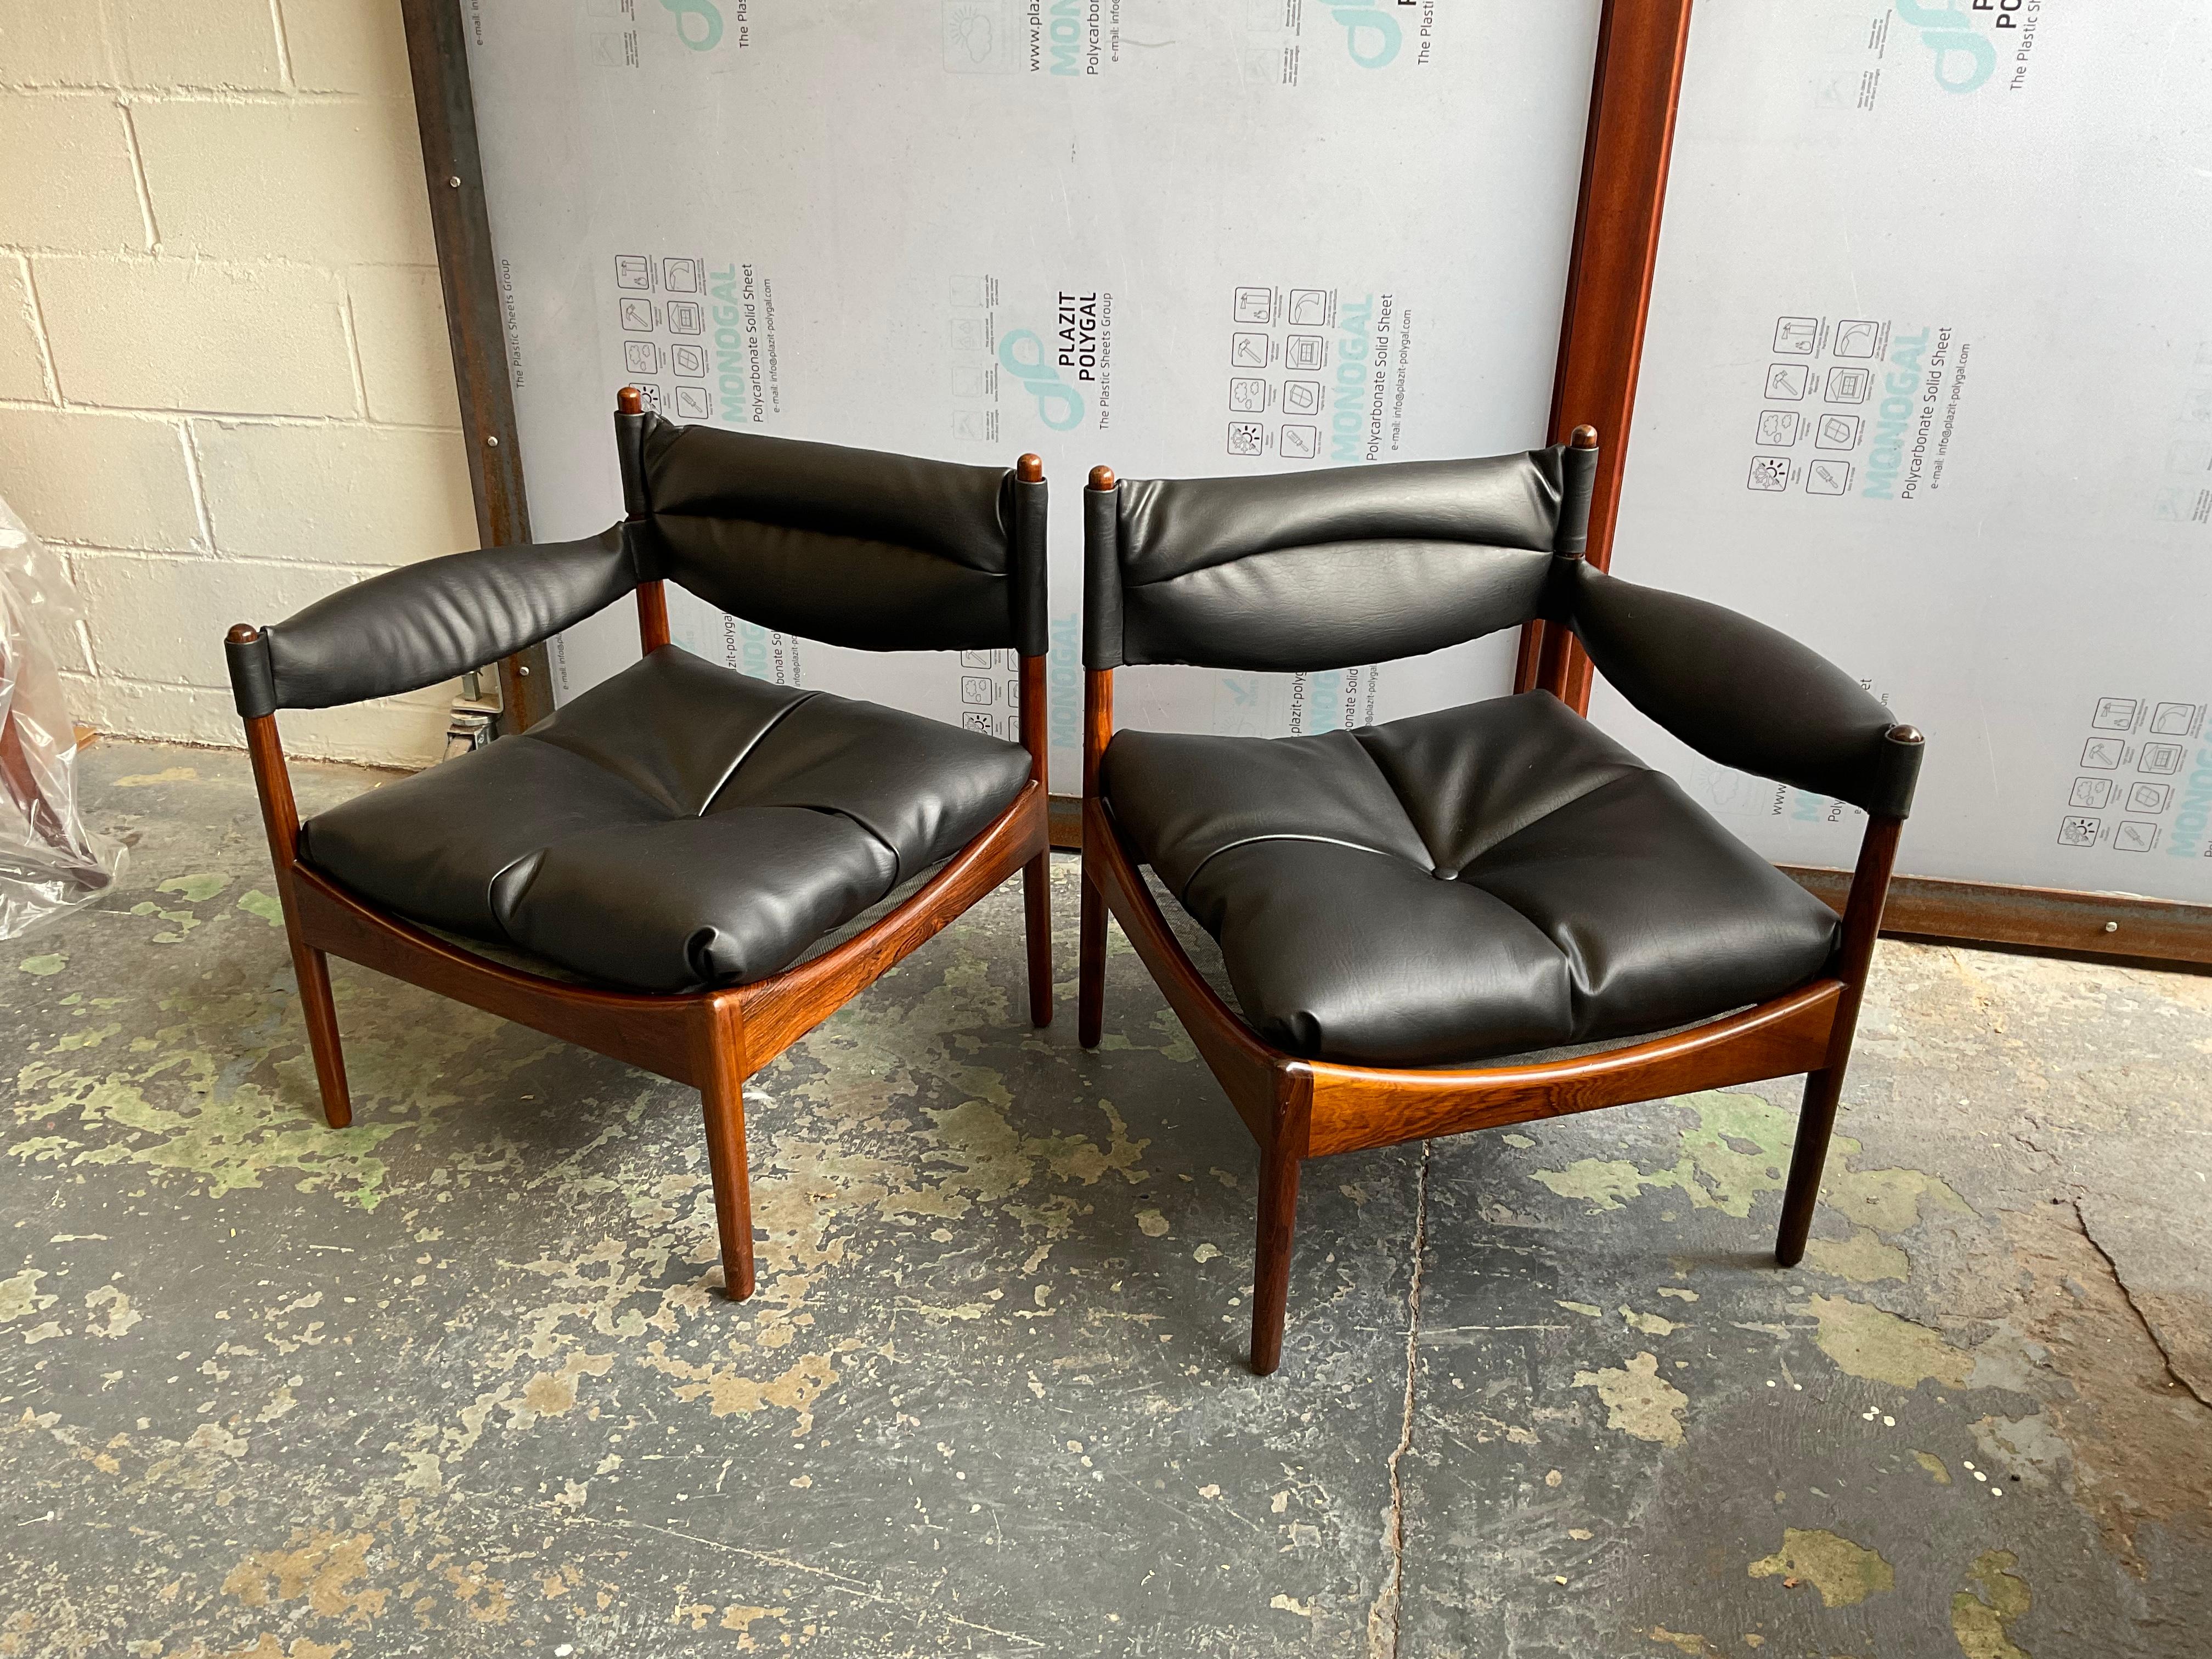 Ein Sofa, das aus zwei einzelnen Sesseln mit je einem Arm besteht - das ist das Modus-System von Kristian Vedel für Søren Willadsen, 1963. Ultimative Raffinesse durch Schlichtheit. Dieses schlichte, aber ästhetisch robuste Design erfreut das Auge